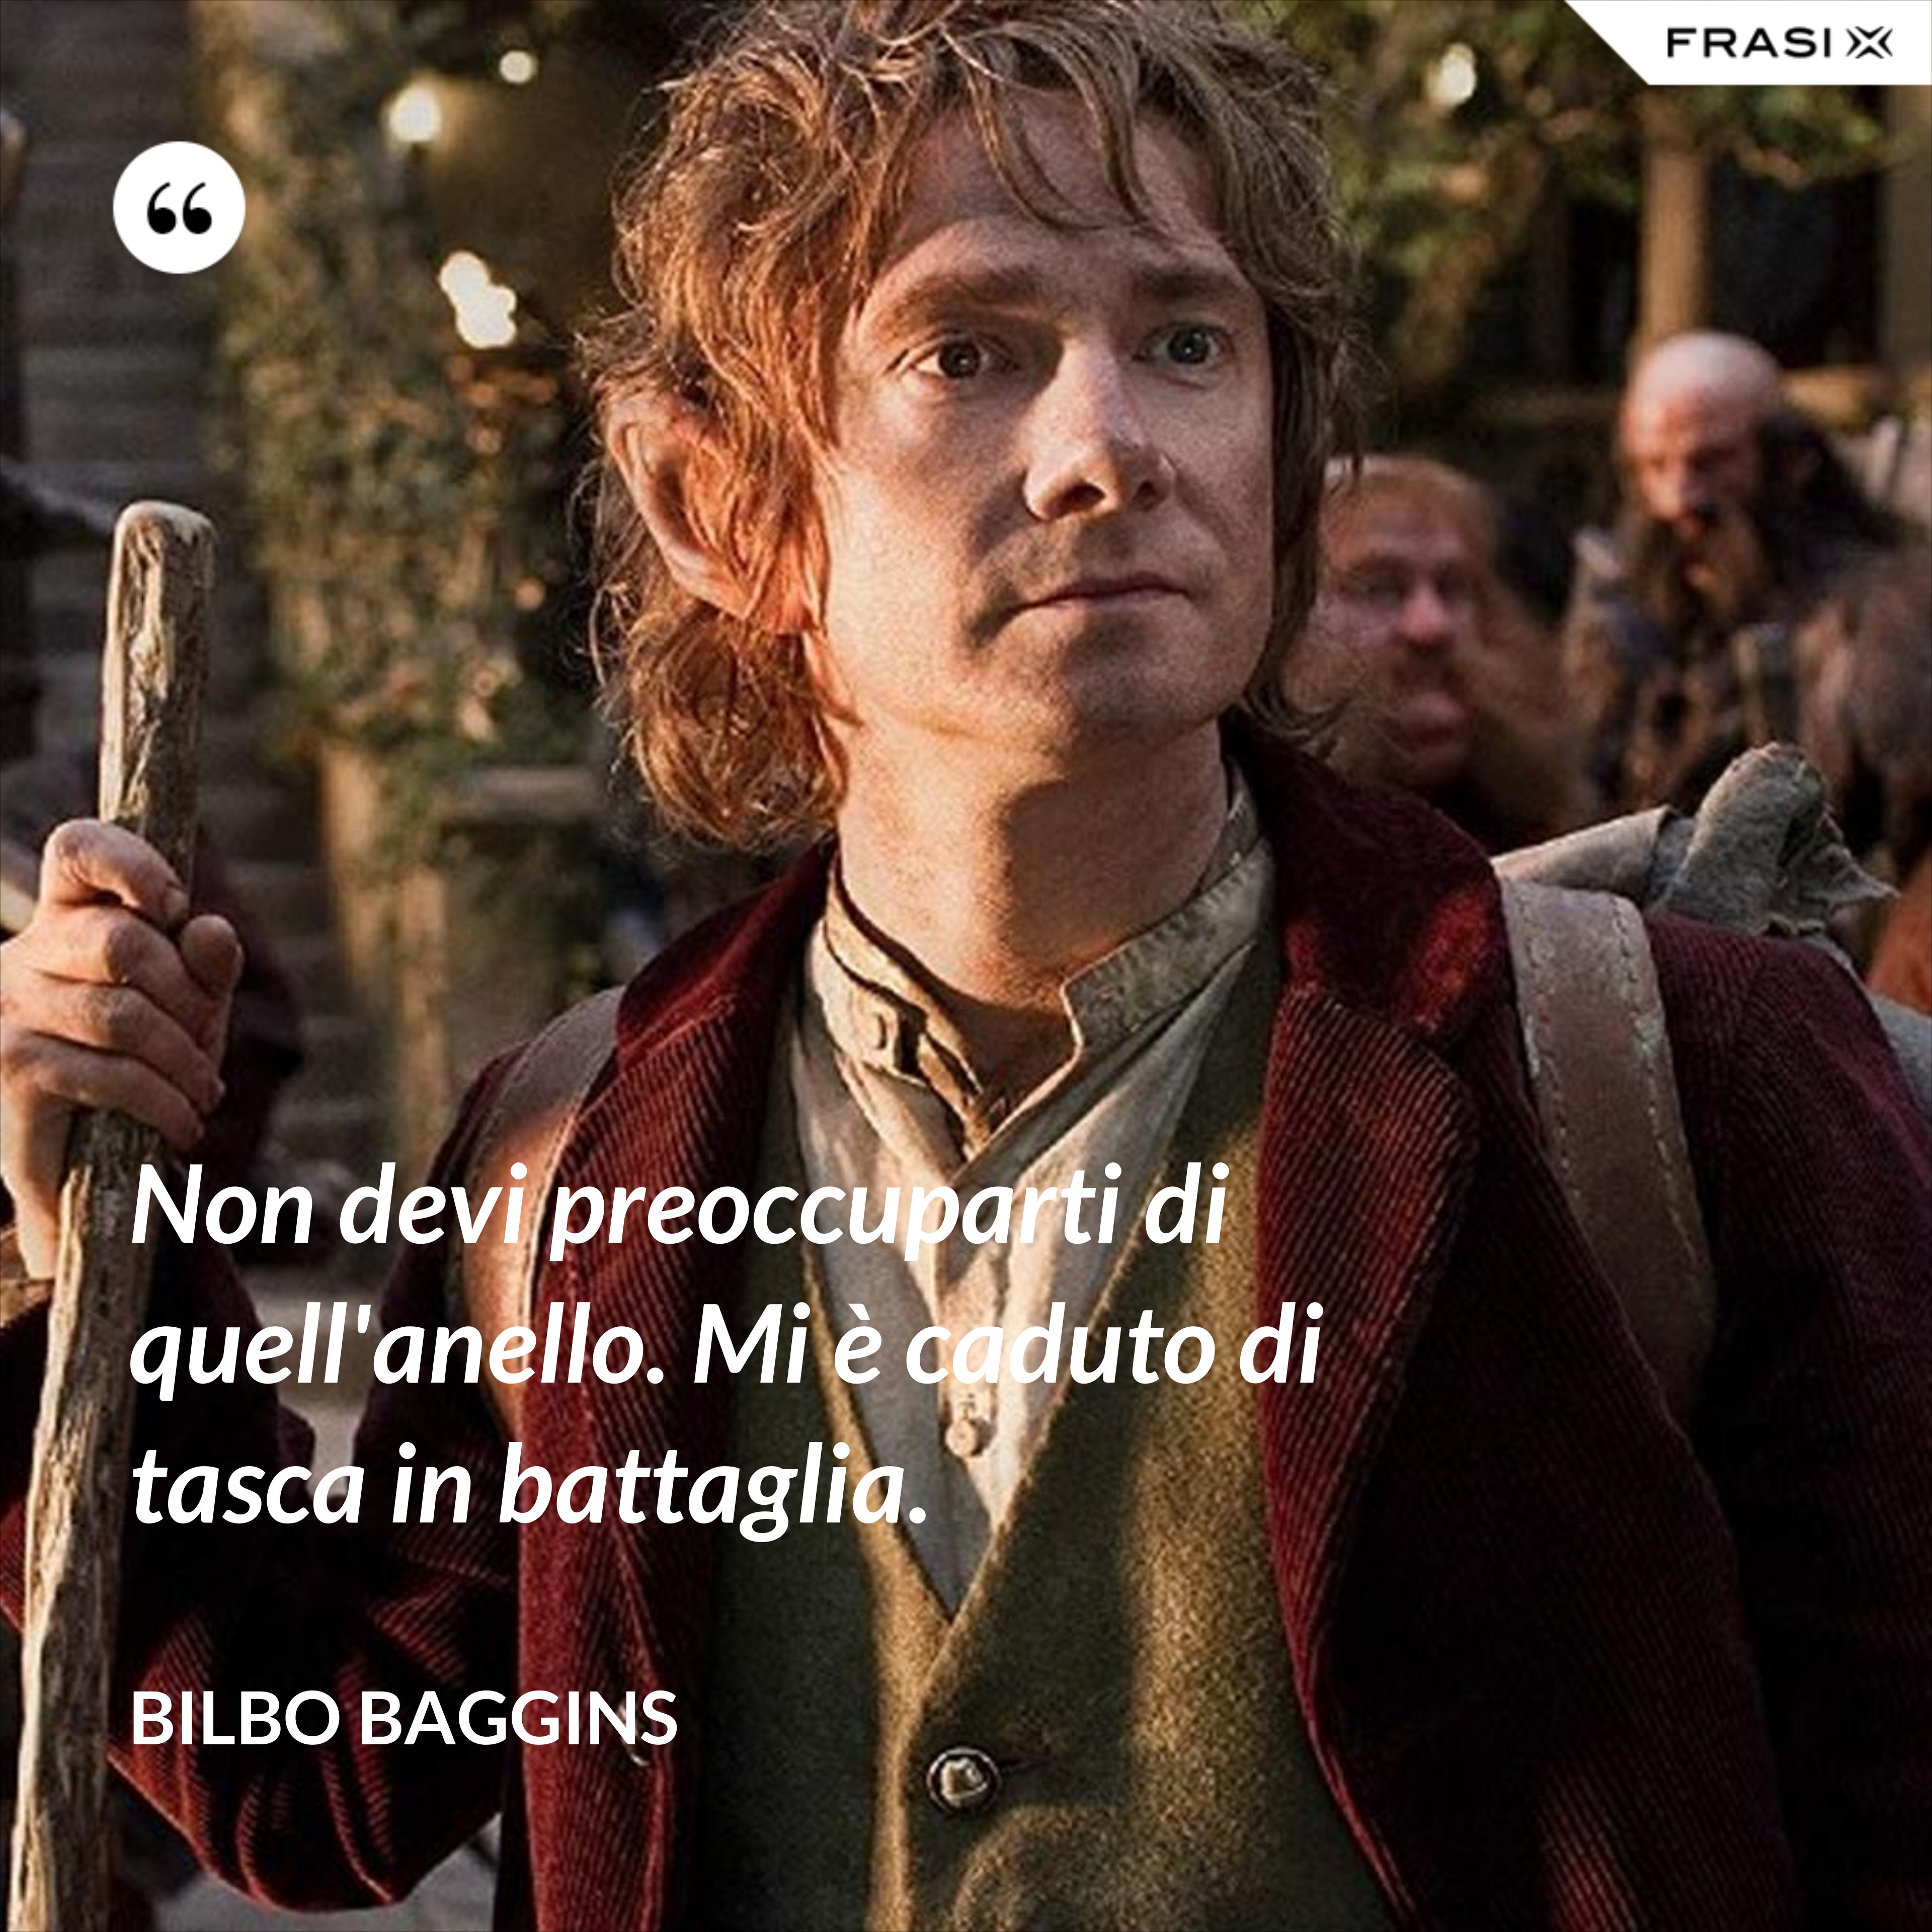 Non devi preoccuparti di quell'anello. Mi è caduto di tasca in battaglia. - Bilbo Baggins